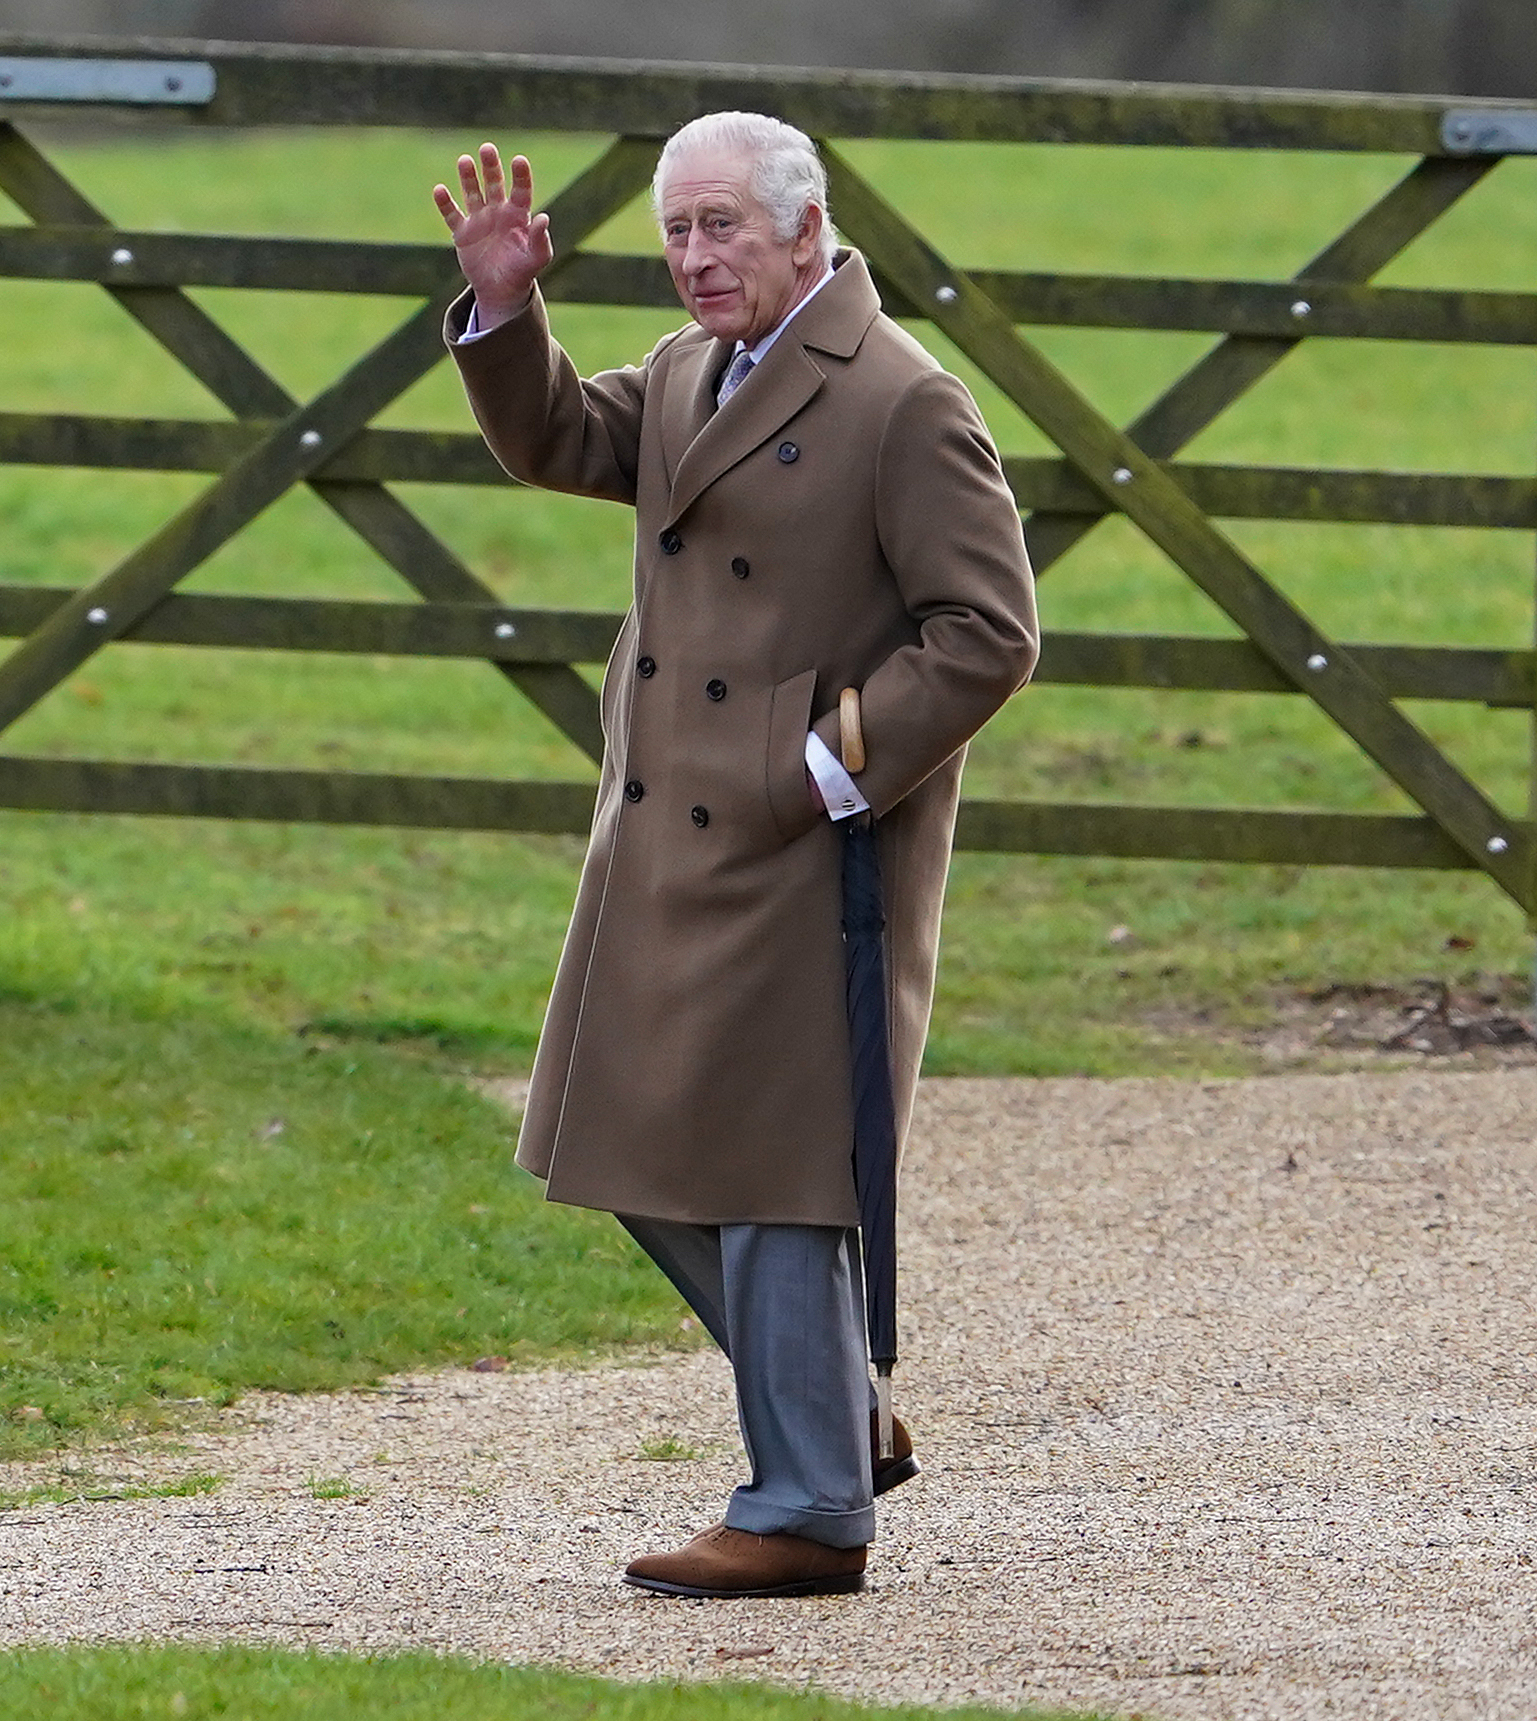 Aujourd'hui, c'était la première fois que Charles était vu depuis que de nouvelles accusations ont été portées contre son frère, le prince Andrew.